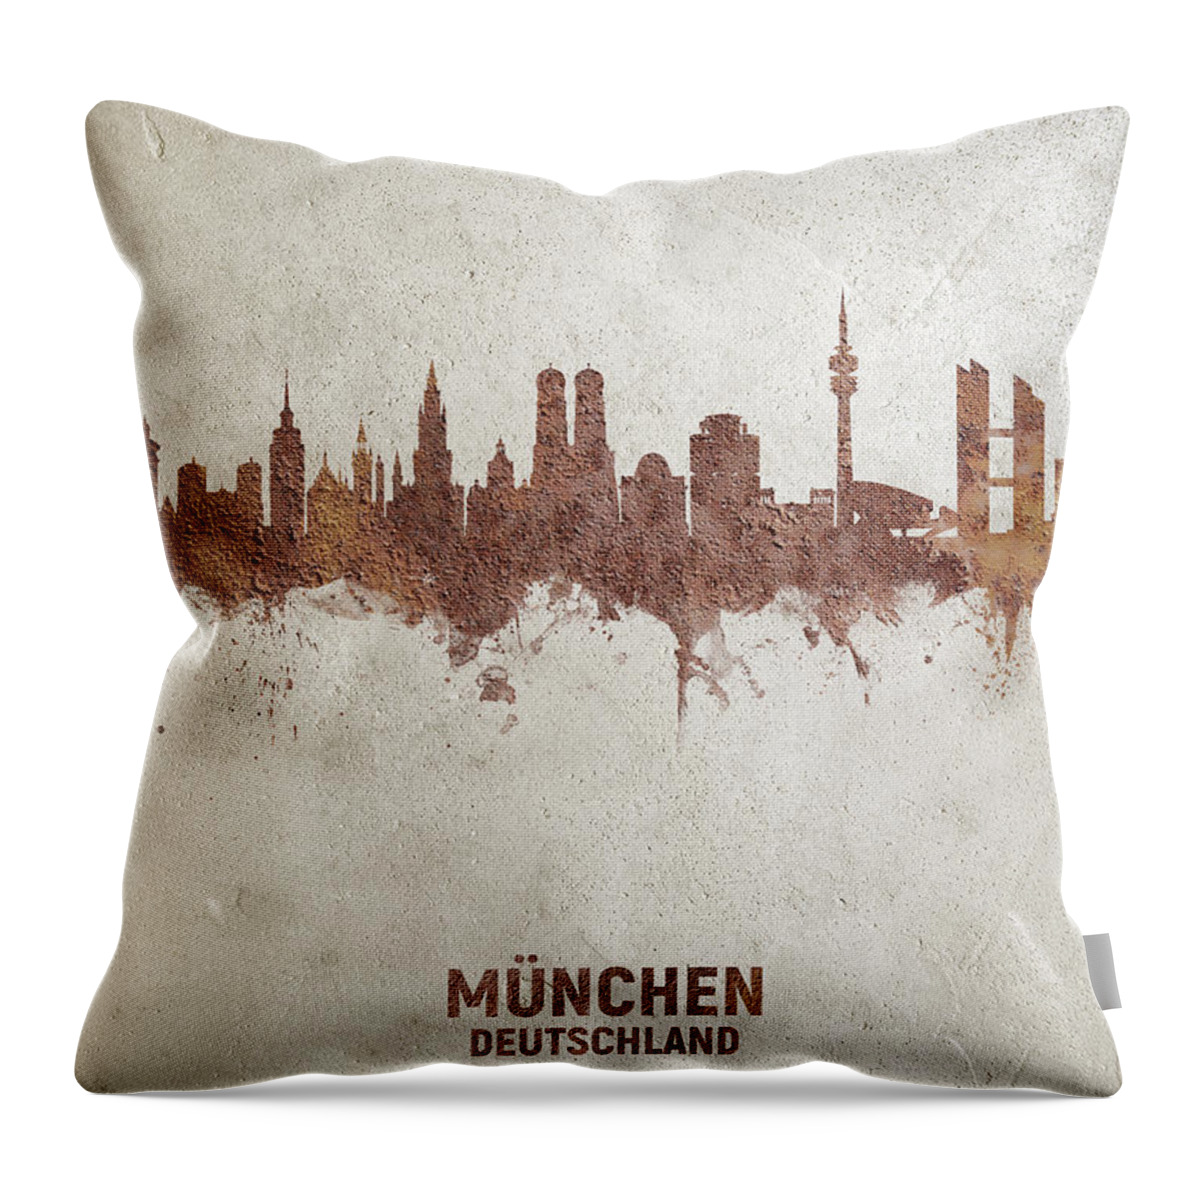 Munich Throw Pillow featuring the digital art Munich Germany Rust Skyline by Michael Tompsett